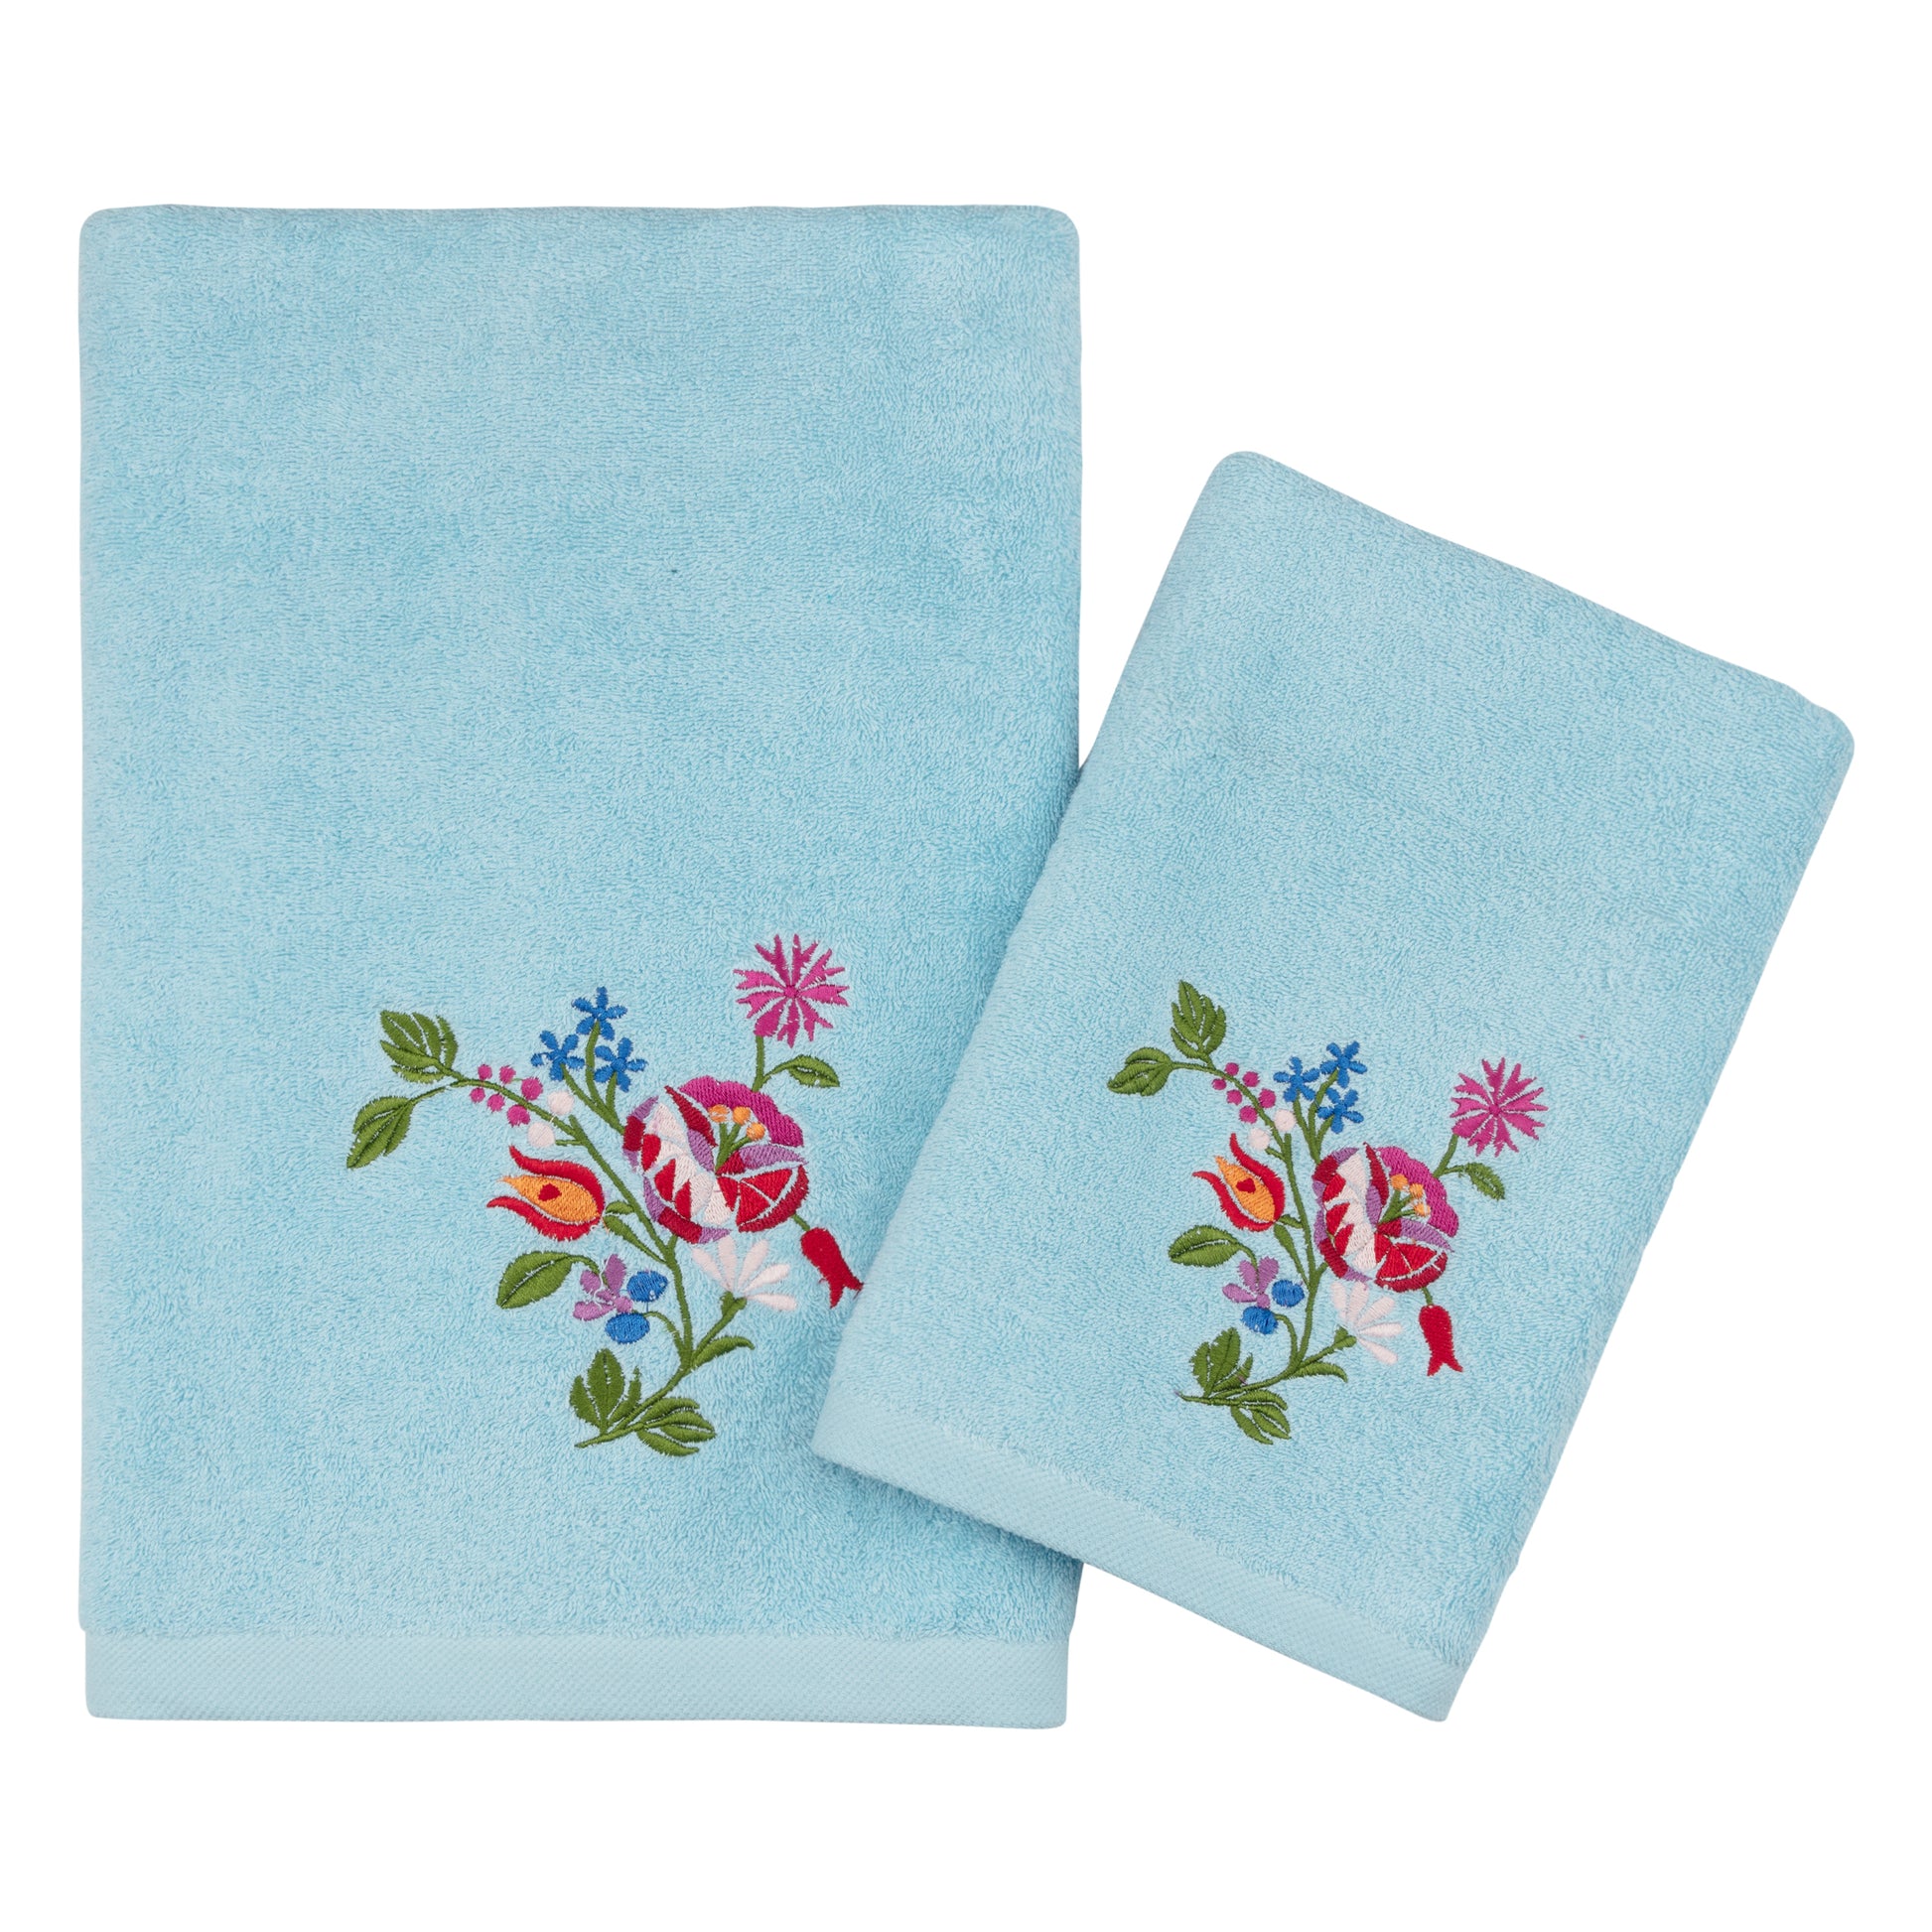 embroidery light blue towel bath towel hand towel USA Canada